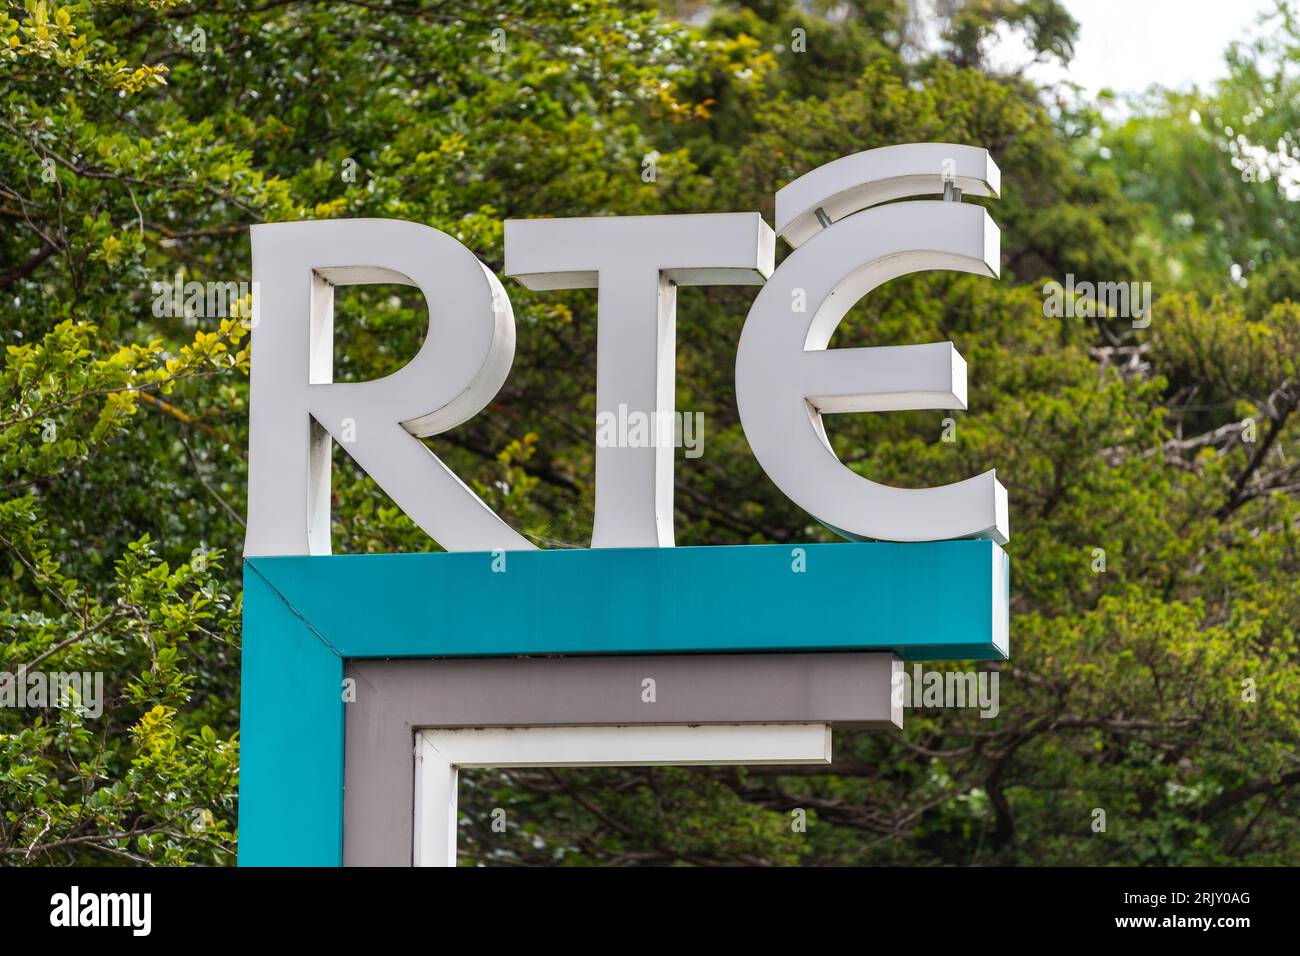 RTE Studios in Donnybrook, Dublin, Ireland. Stock Photo